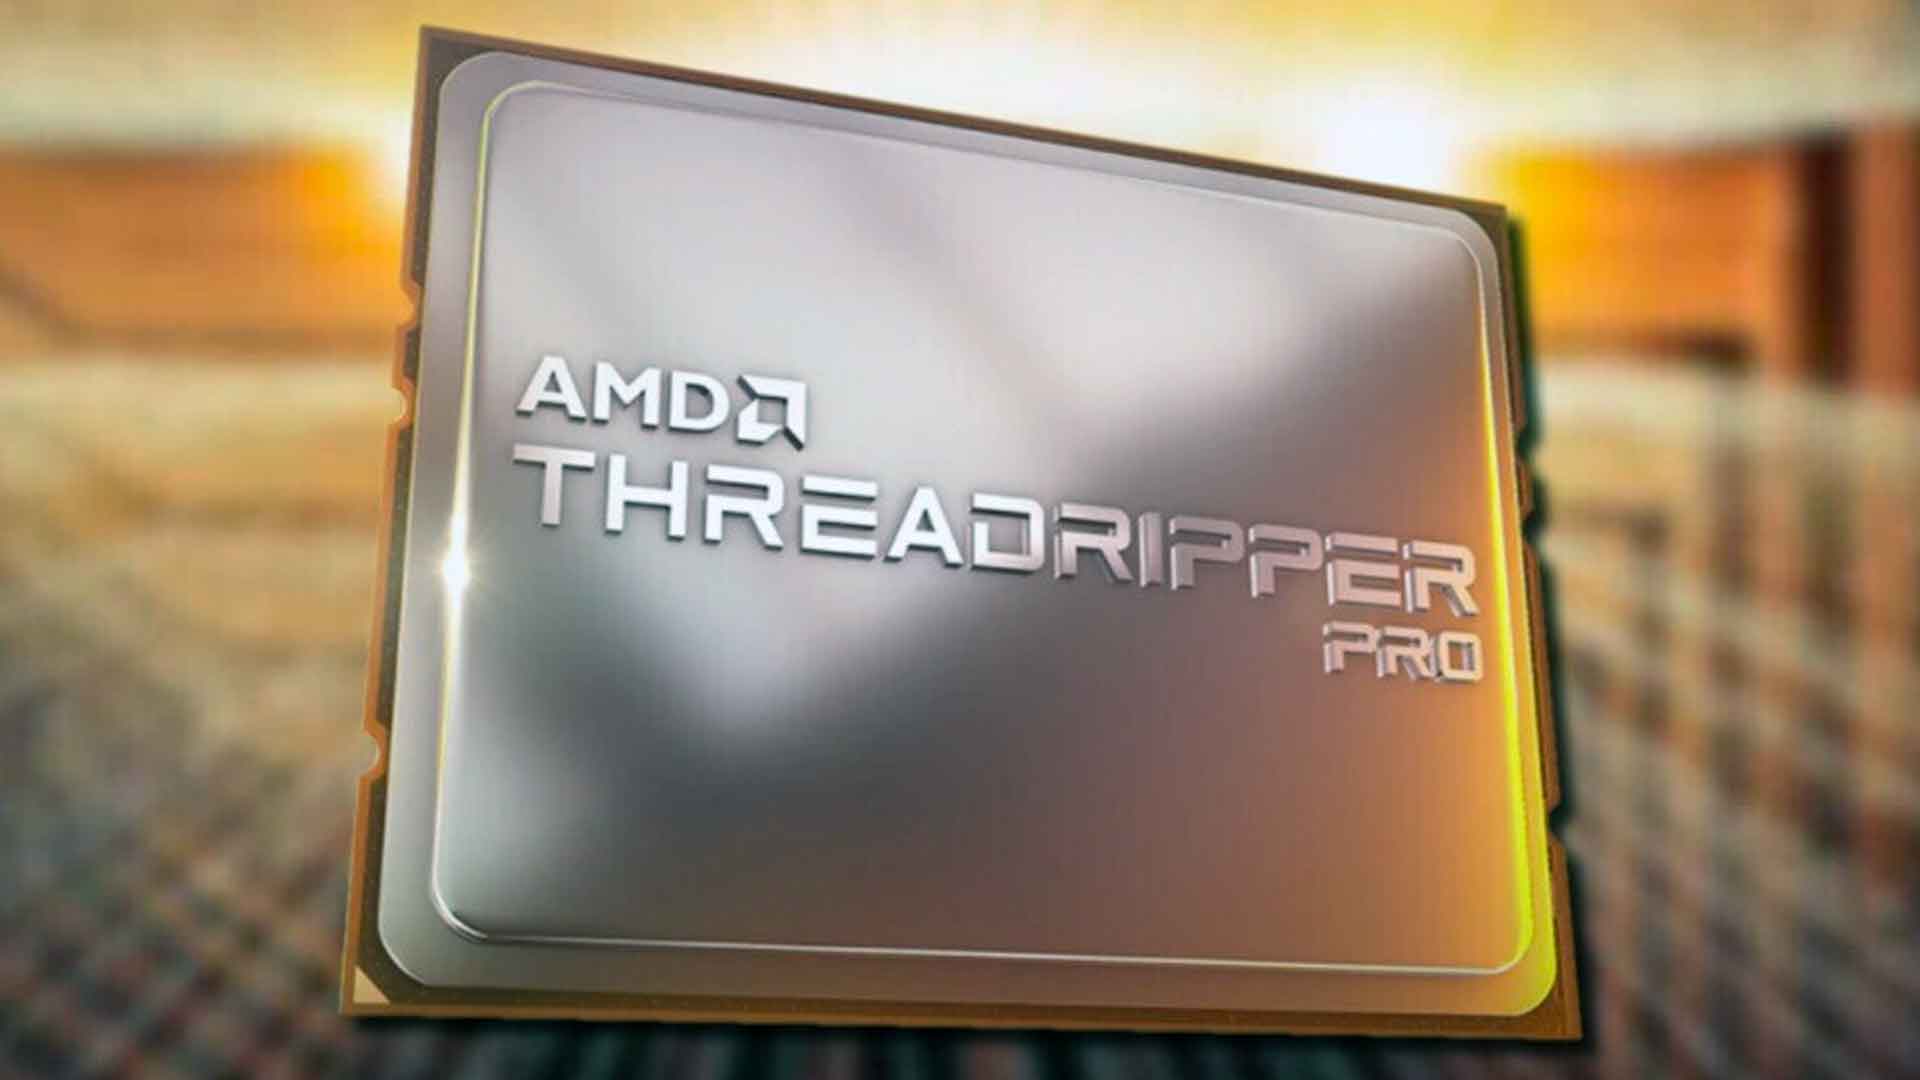 Amd threadripper pro 5995wx. Threadripper Pro 5995wx. AMD Threadripper Pro 7995wx. Threadripper Pro 5975wx.